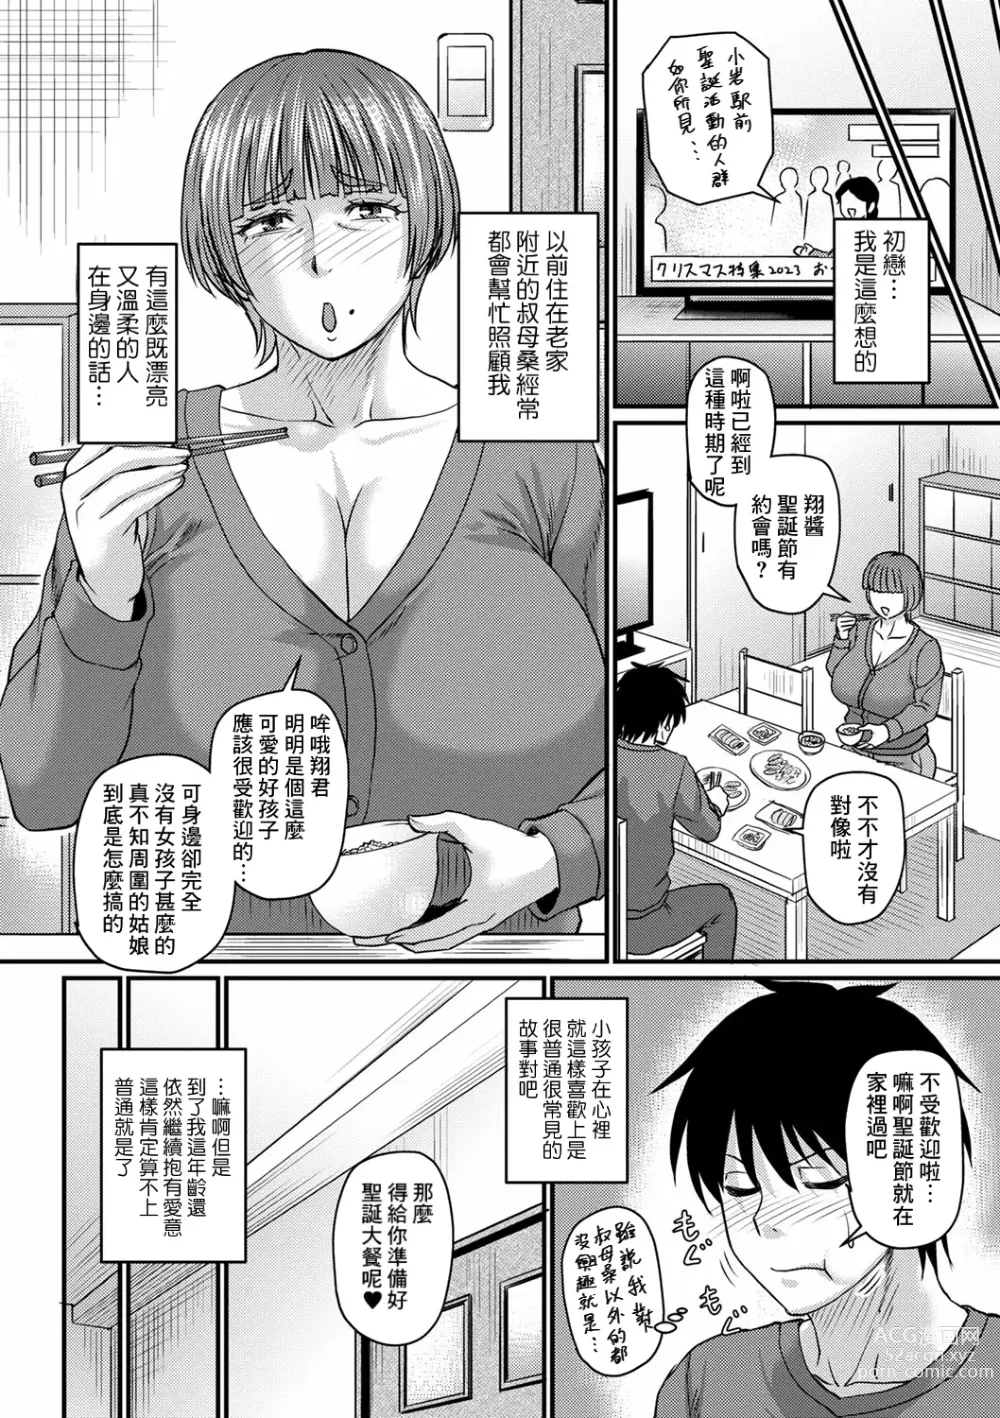 Page 2 of manga Obasan to Futarigurashi